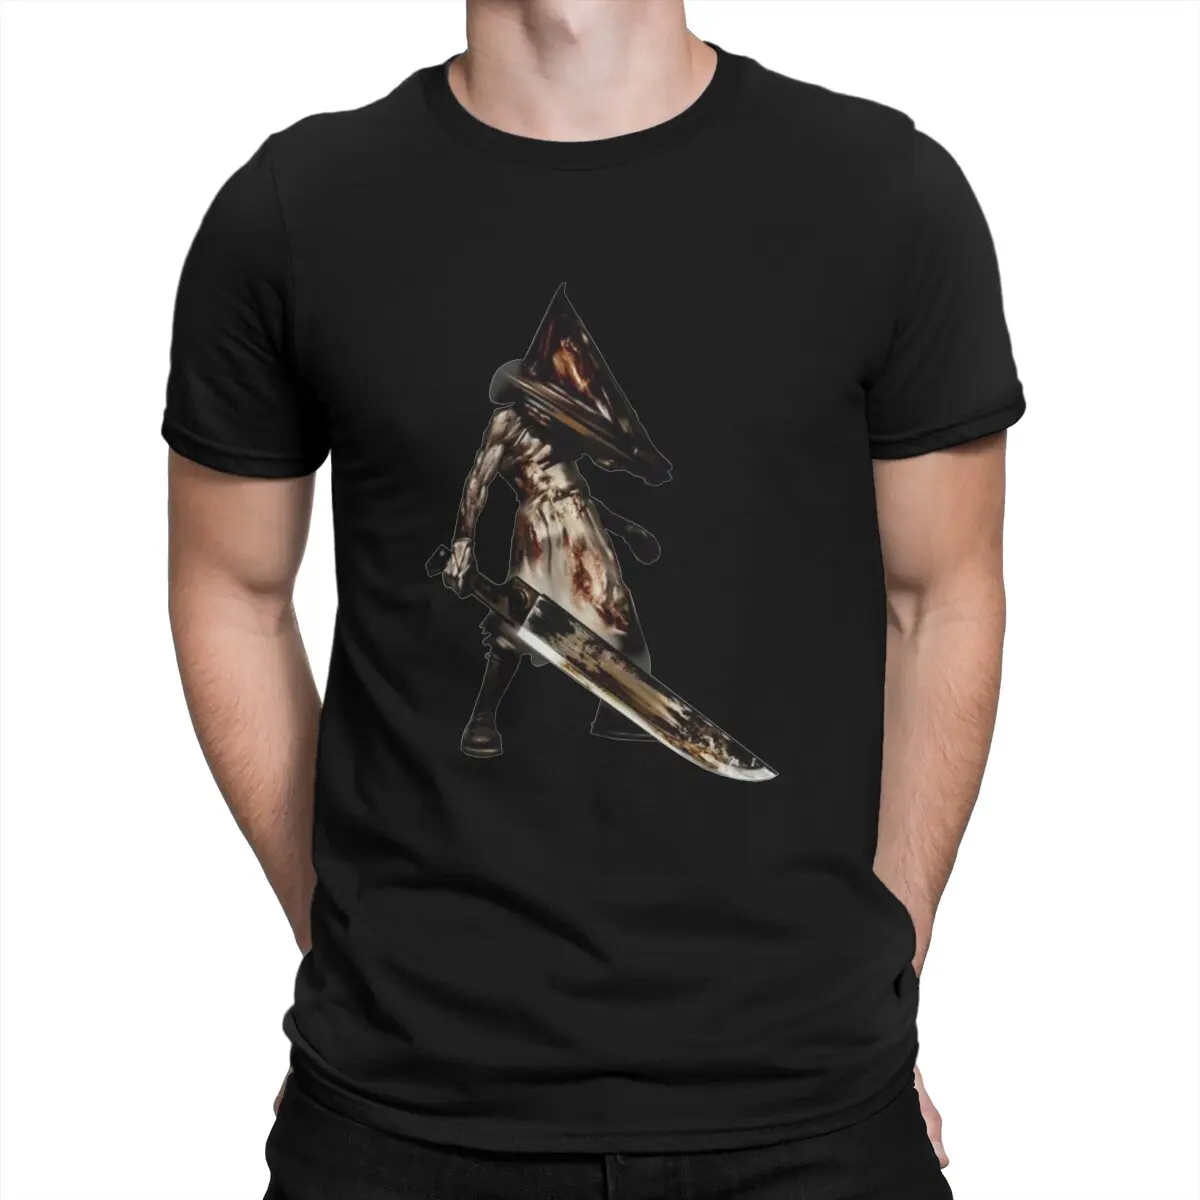 Креативная футболка Silent Hill для мужчин Red Pyramid Thing, футболка из чистого хлопка с круглым воротом, персонализированная подарочная одежда, уличная одежда